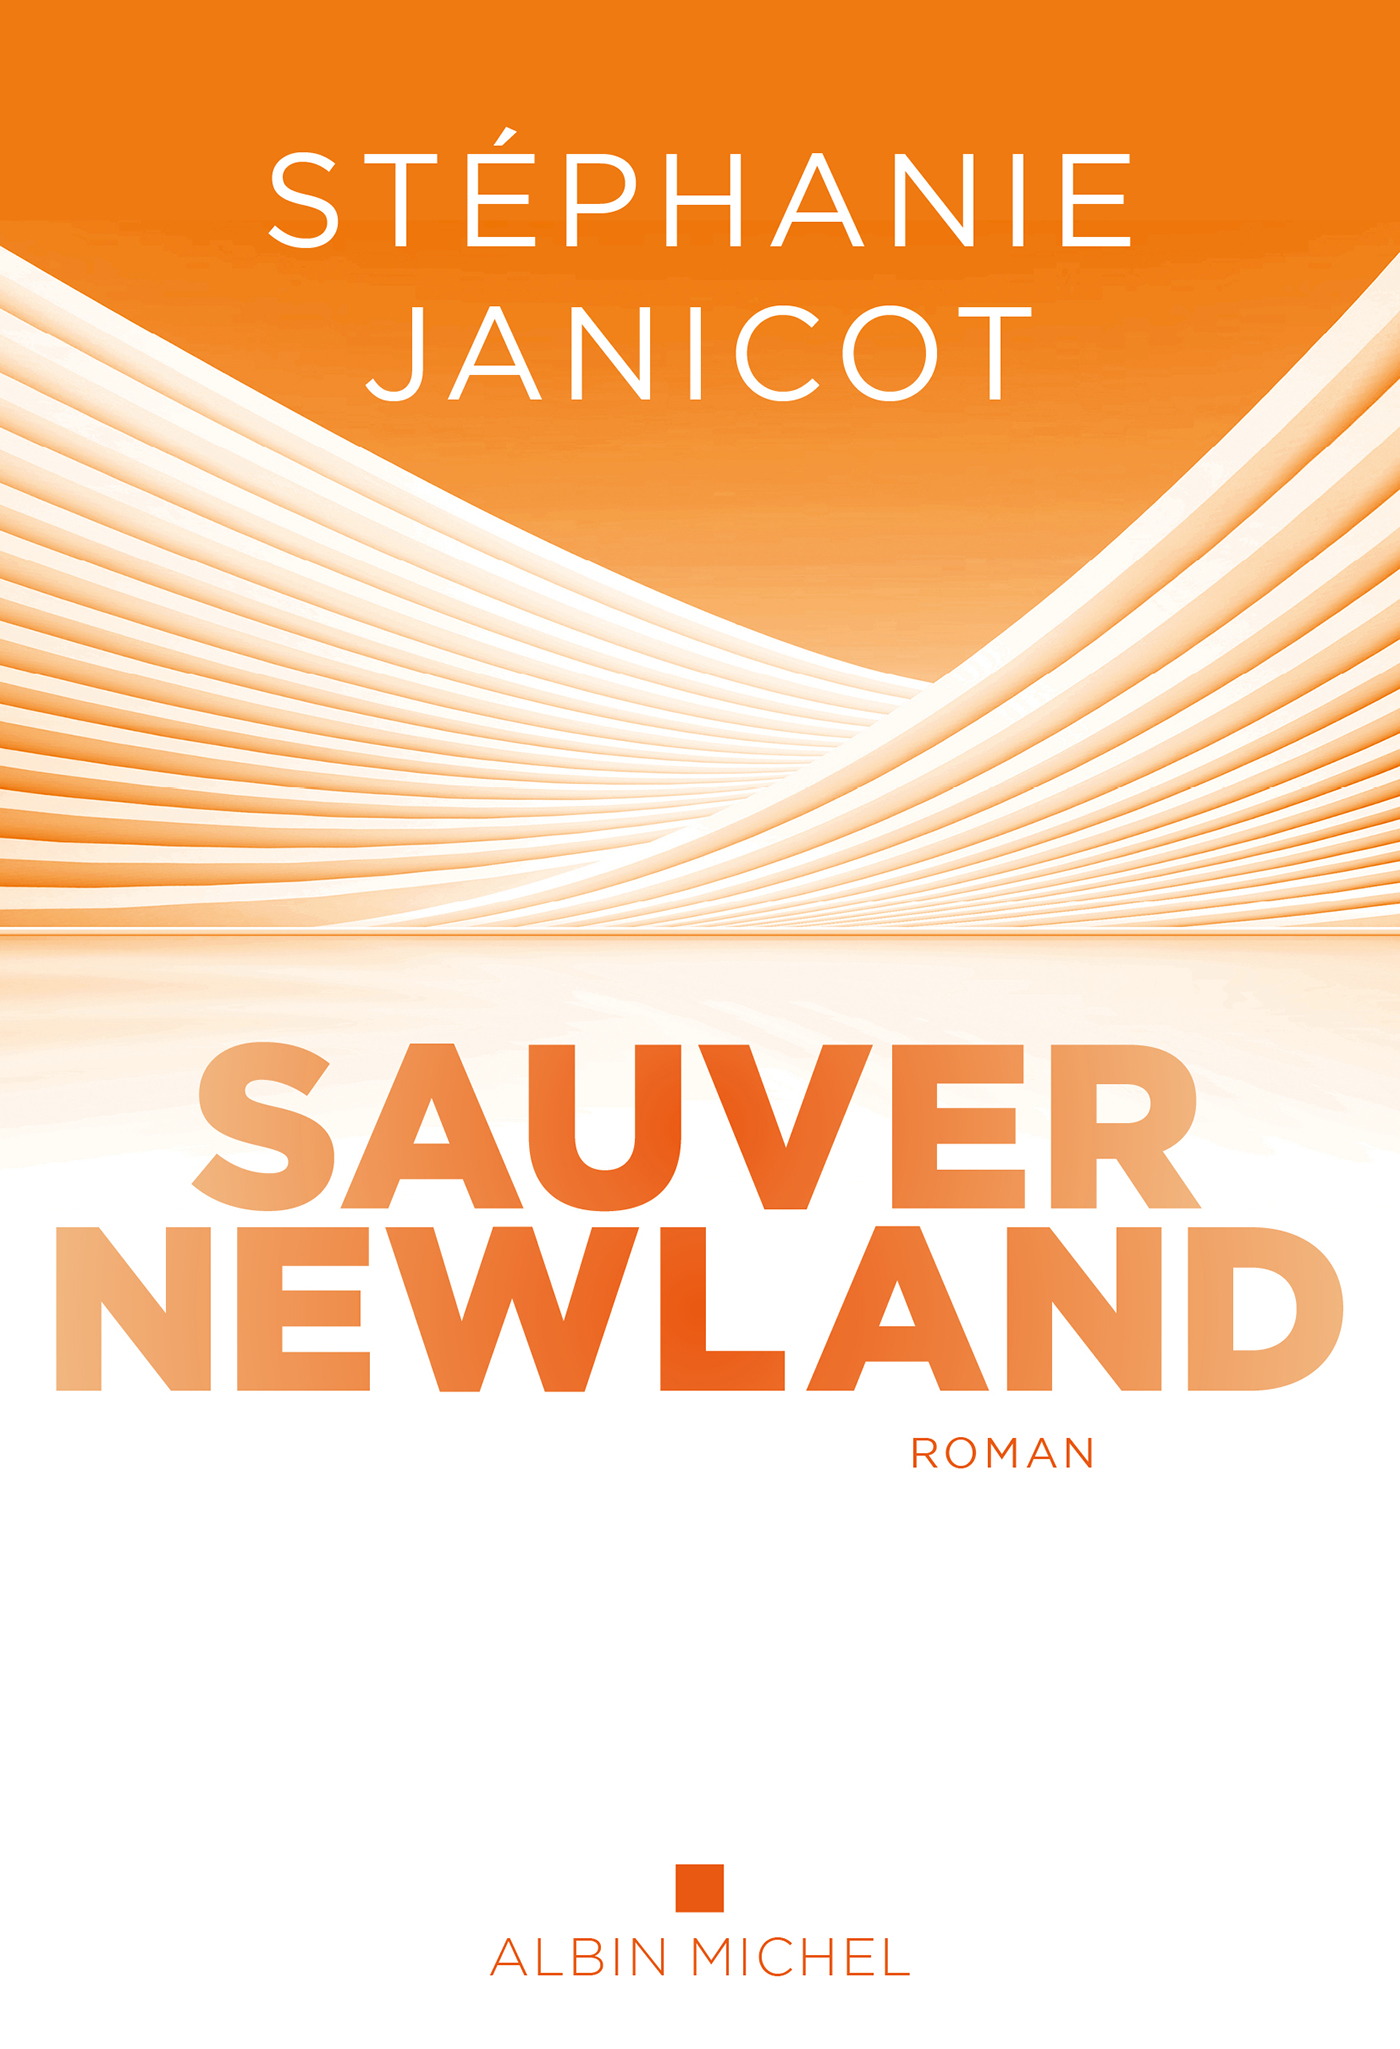 Couverture du livre Sauver Newland